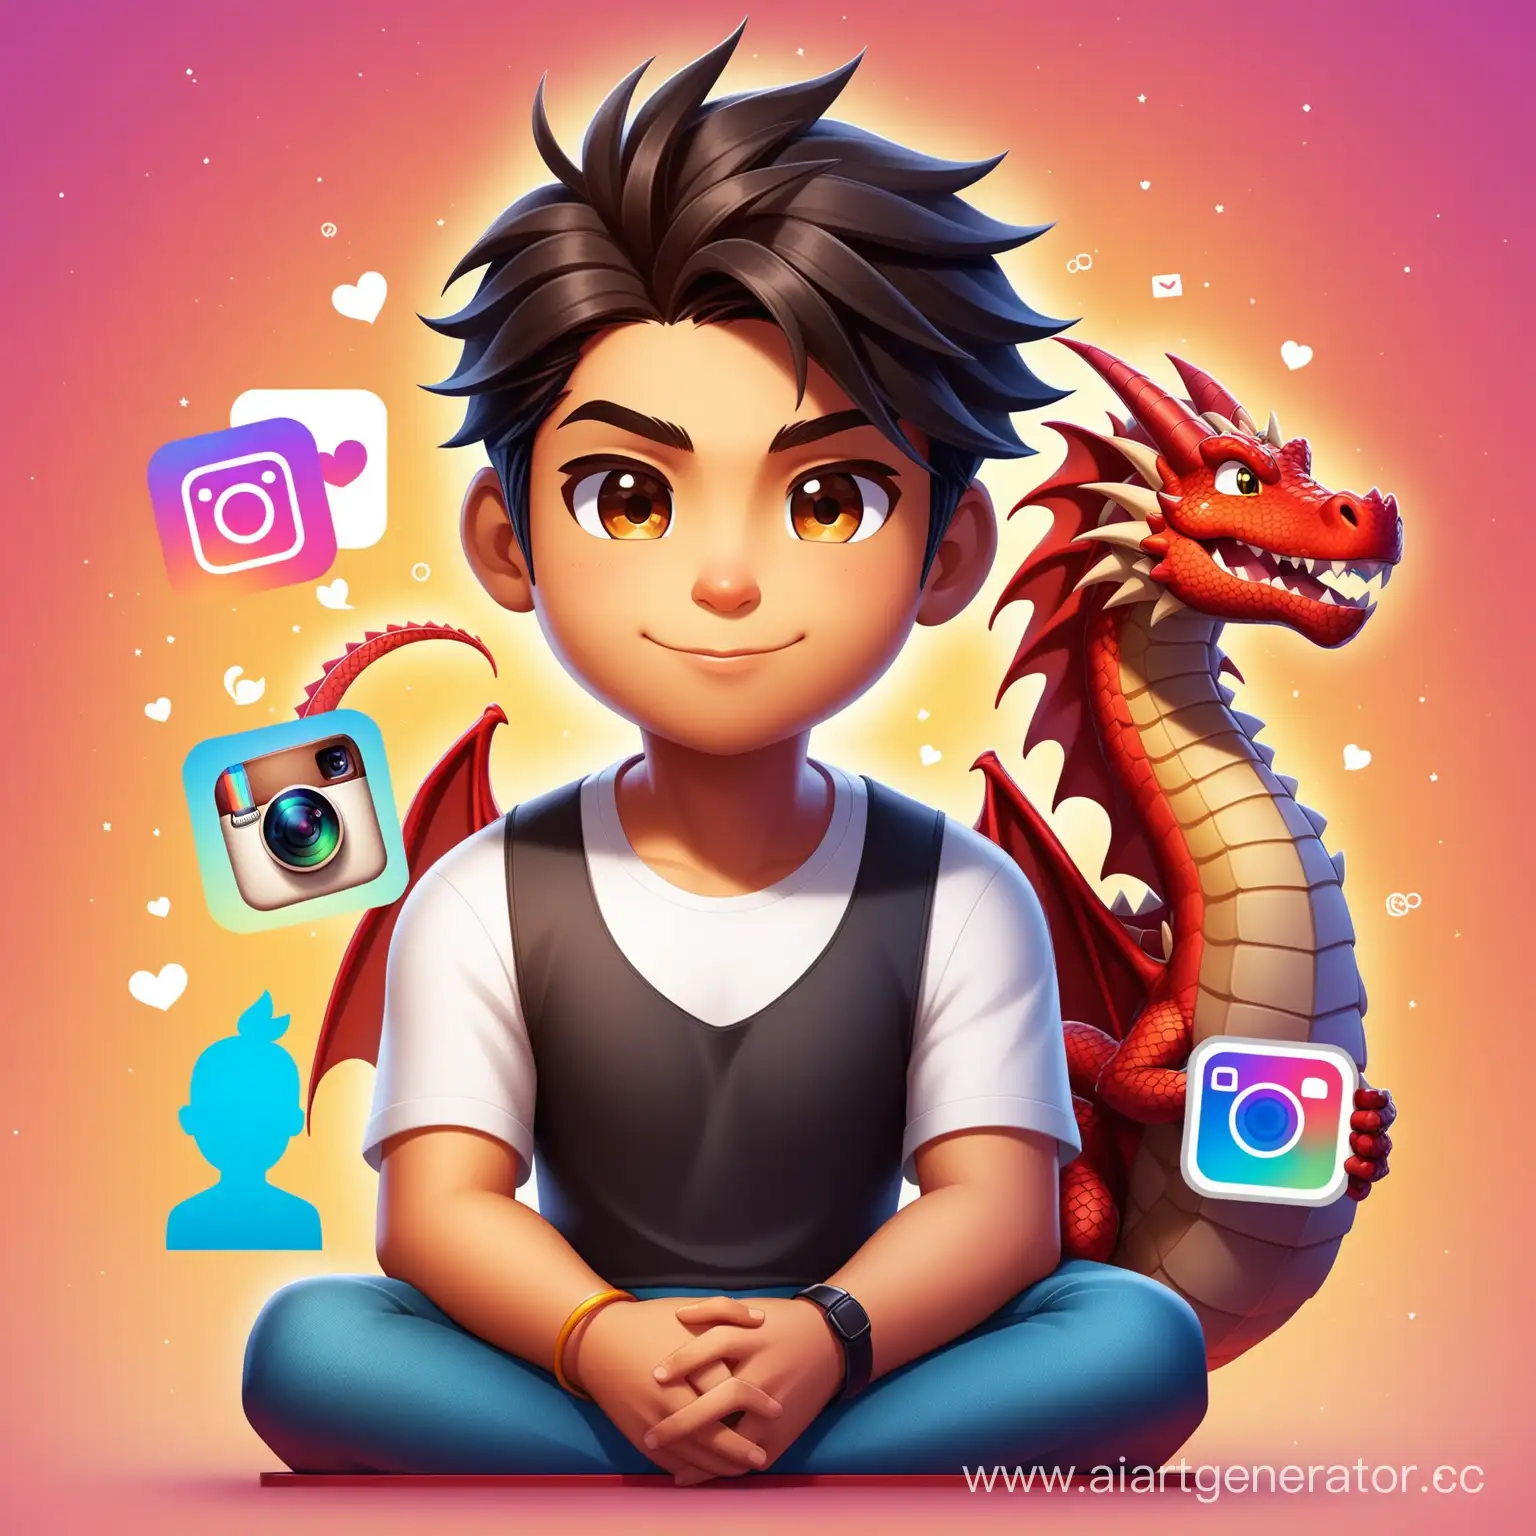 Modern-Boy-with-Dragon-on-Instagram-Profile-Shahrukh-Art